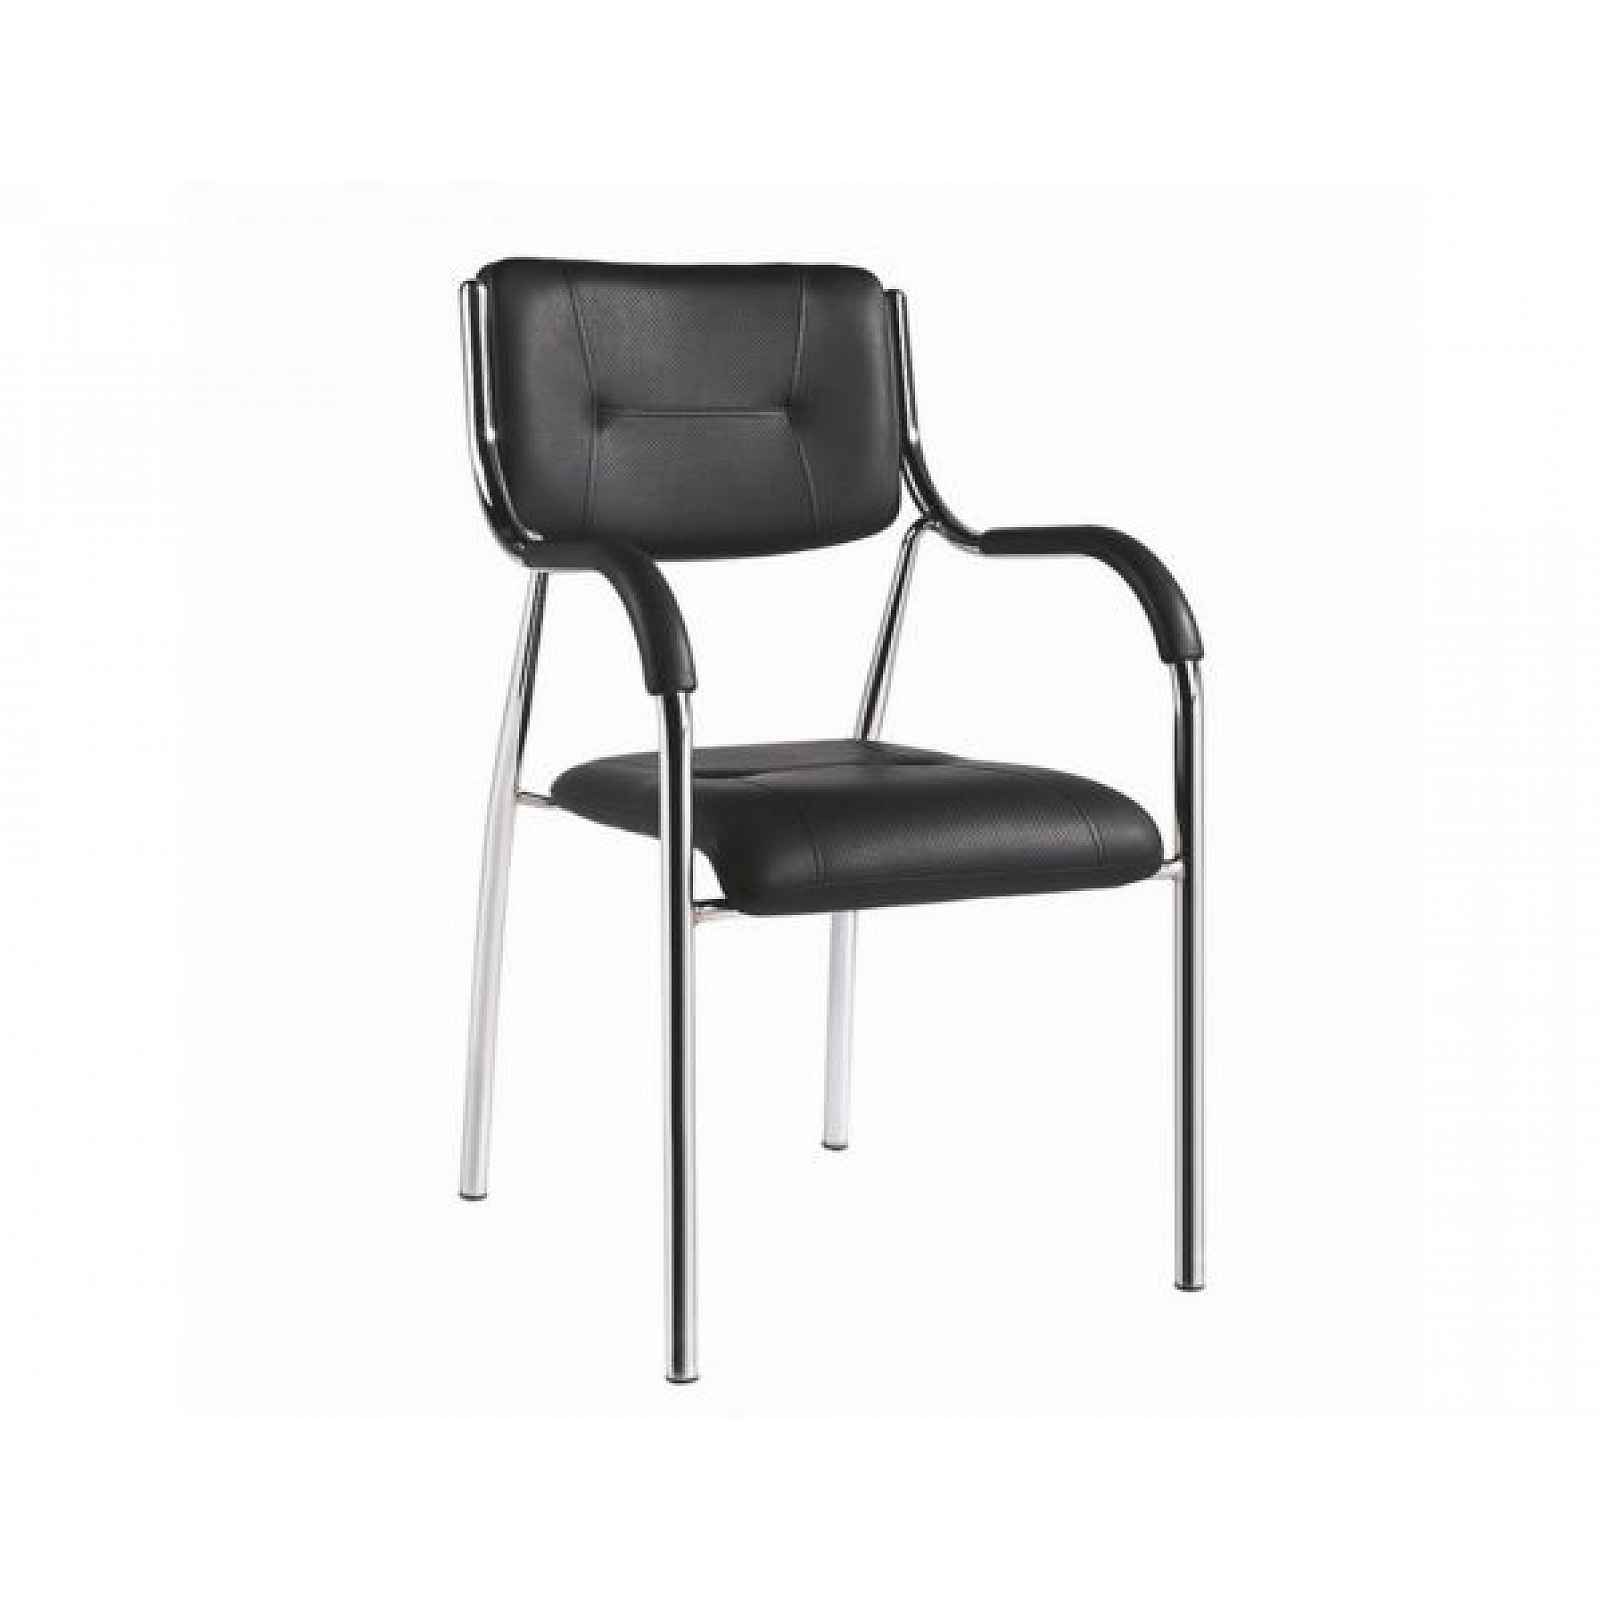 Stohovatelná židle, černá, ILHAM - 52x55x85 cm